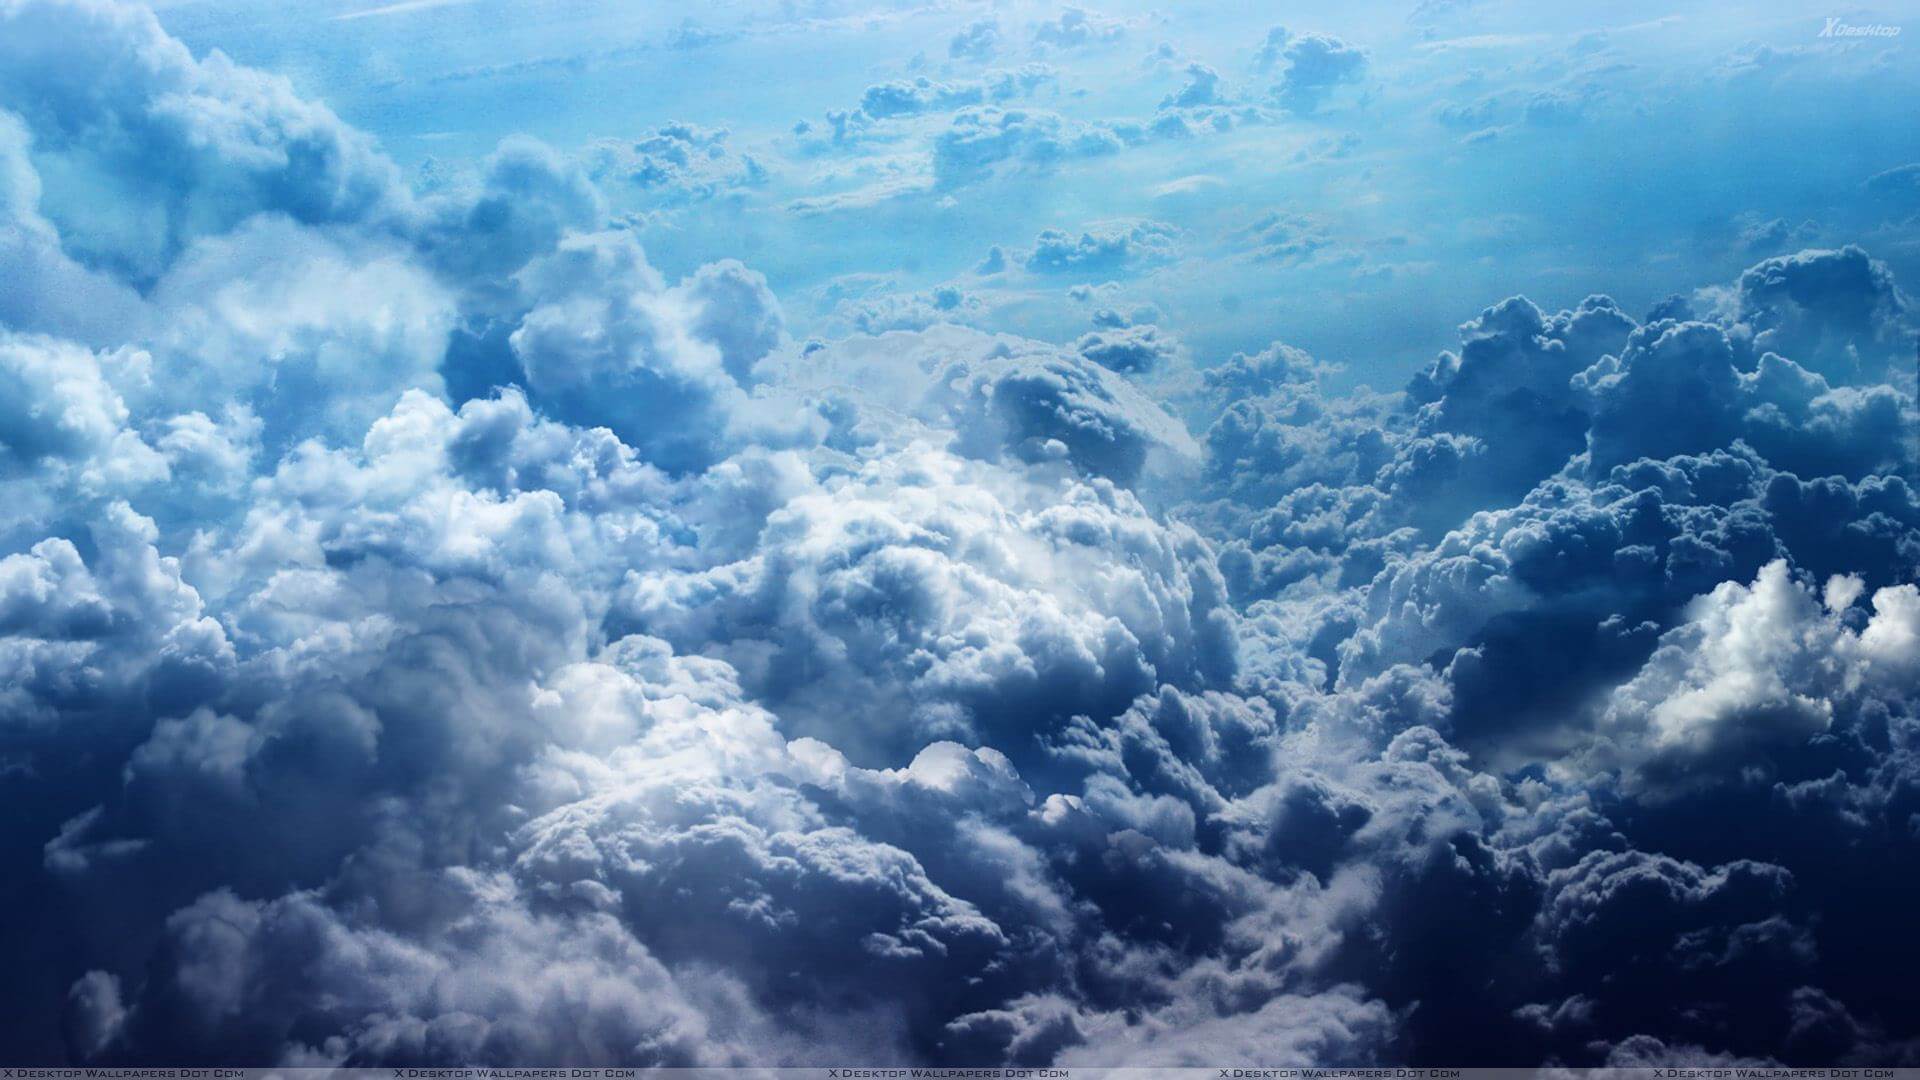 Fondos de pantalla e imágenes de la nube más bonitos para PC